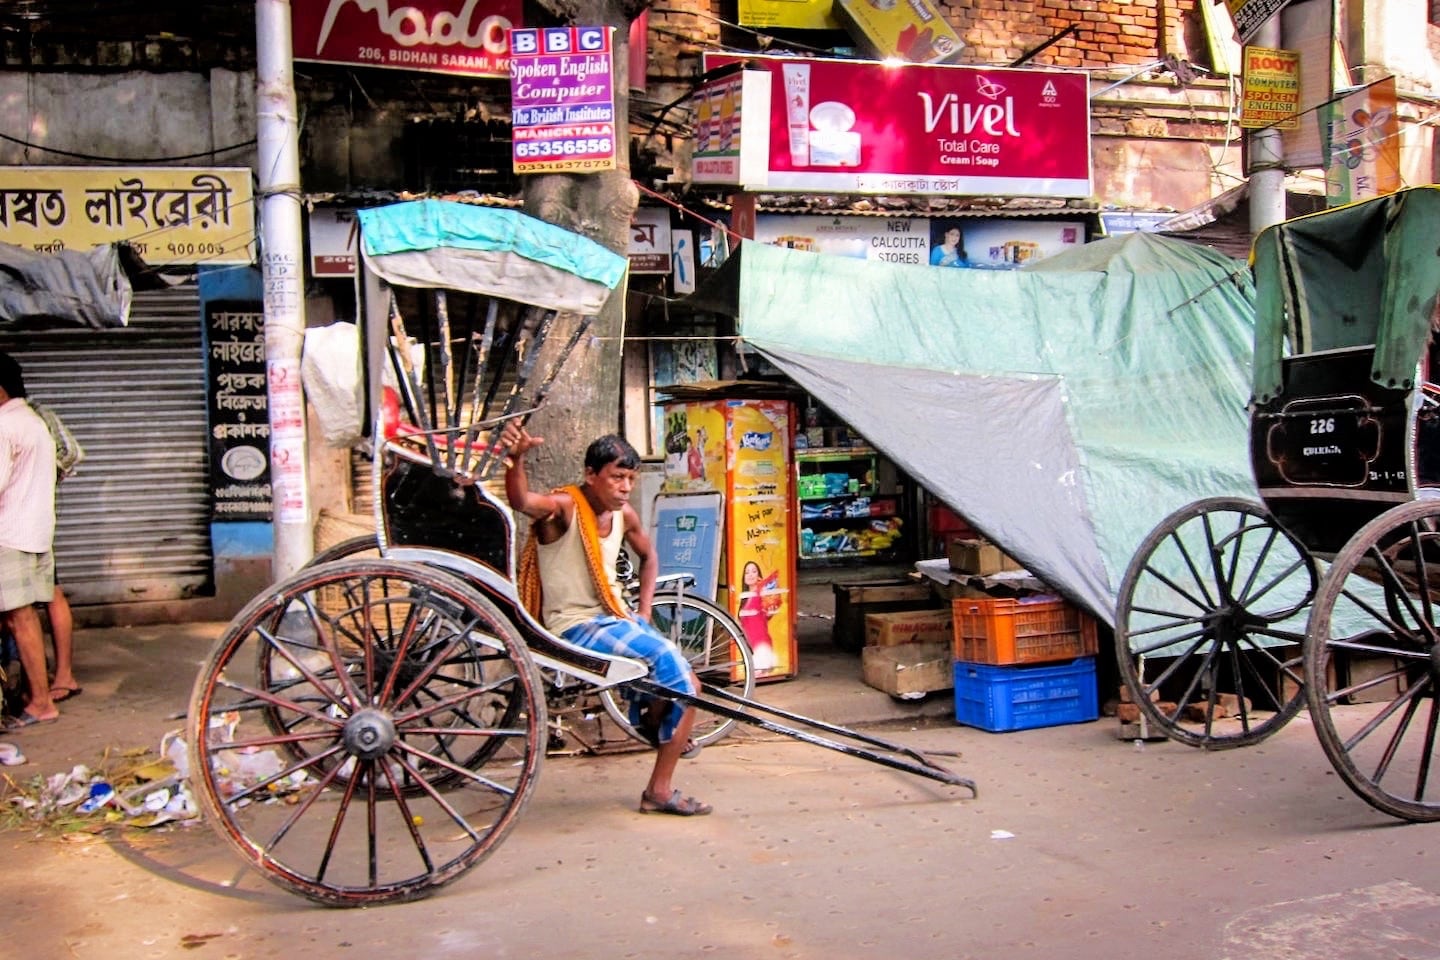 cycle rickshaw Kolkata India travel budget